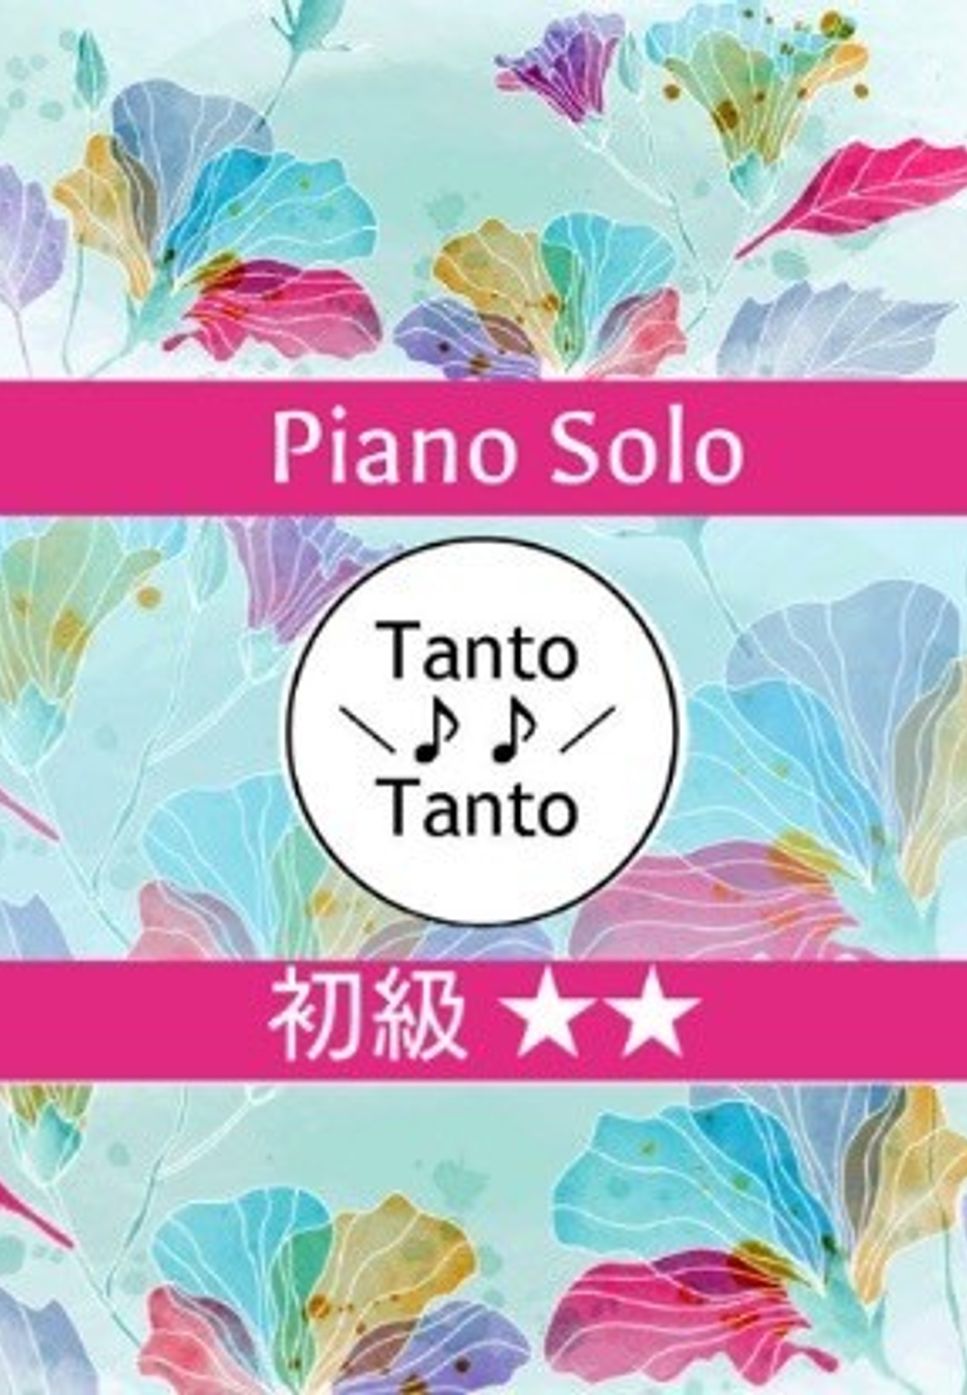 久石 譲 - となりのトトロ (Piano Solo in C) by Tanto Tanto